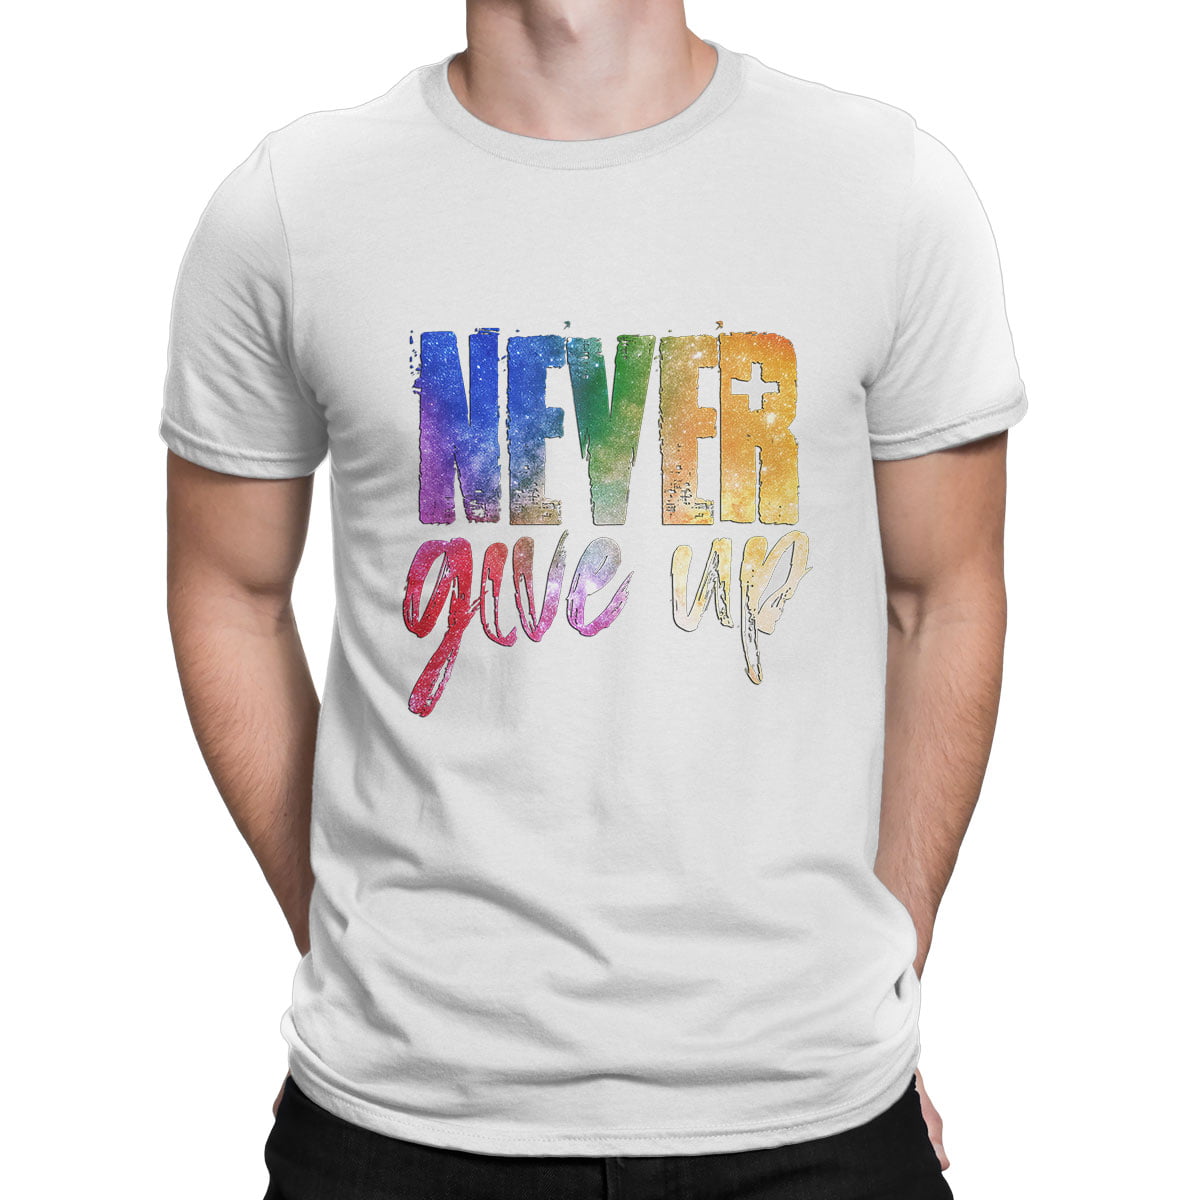 Never give up tshirt erkek b - never give up baskılı erkek t-shirt - figurex